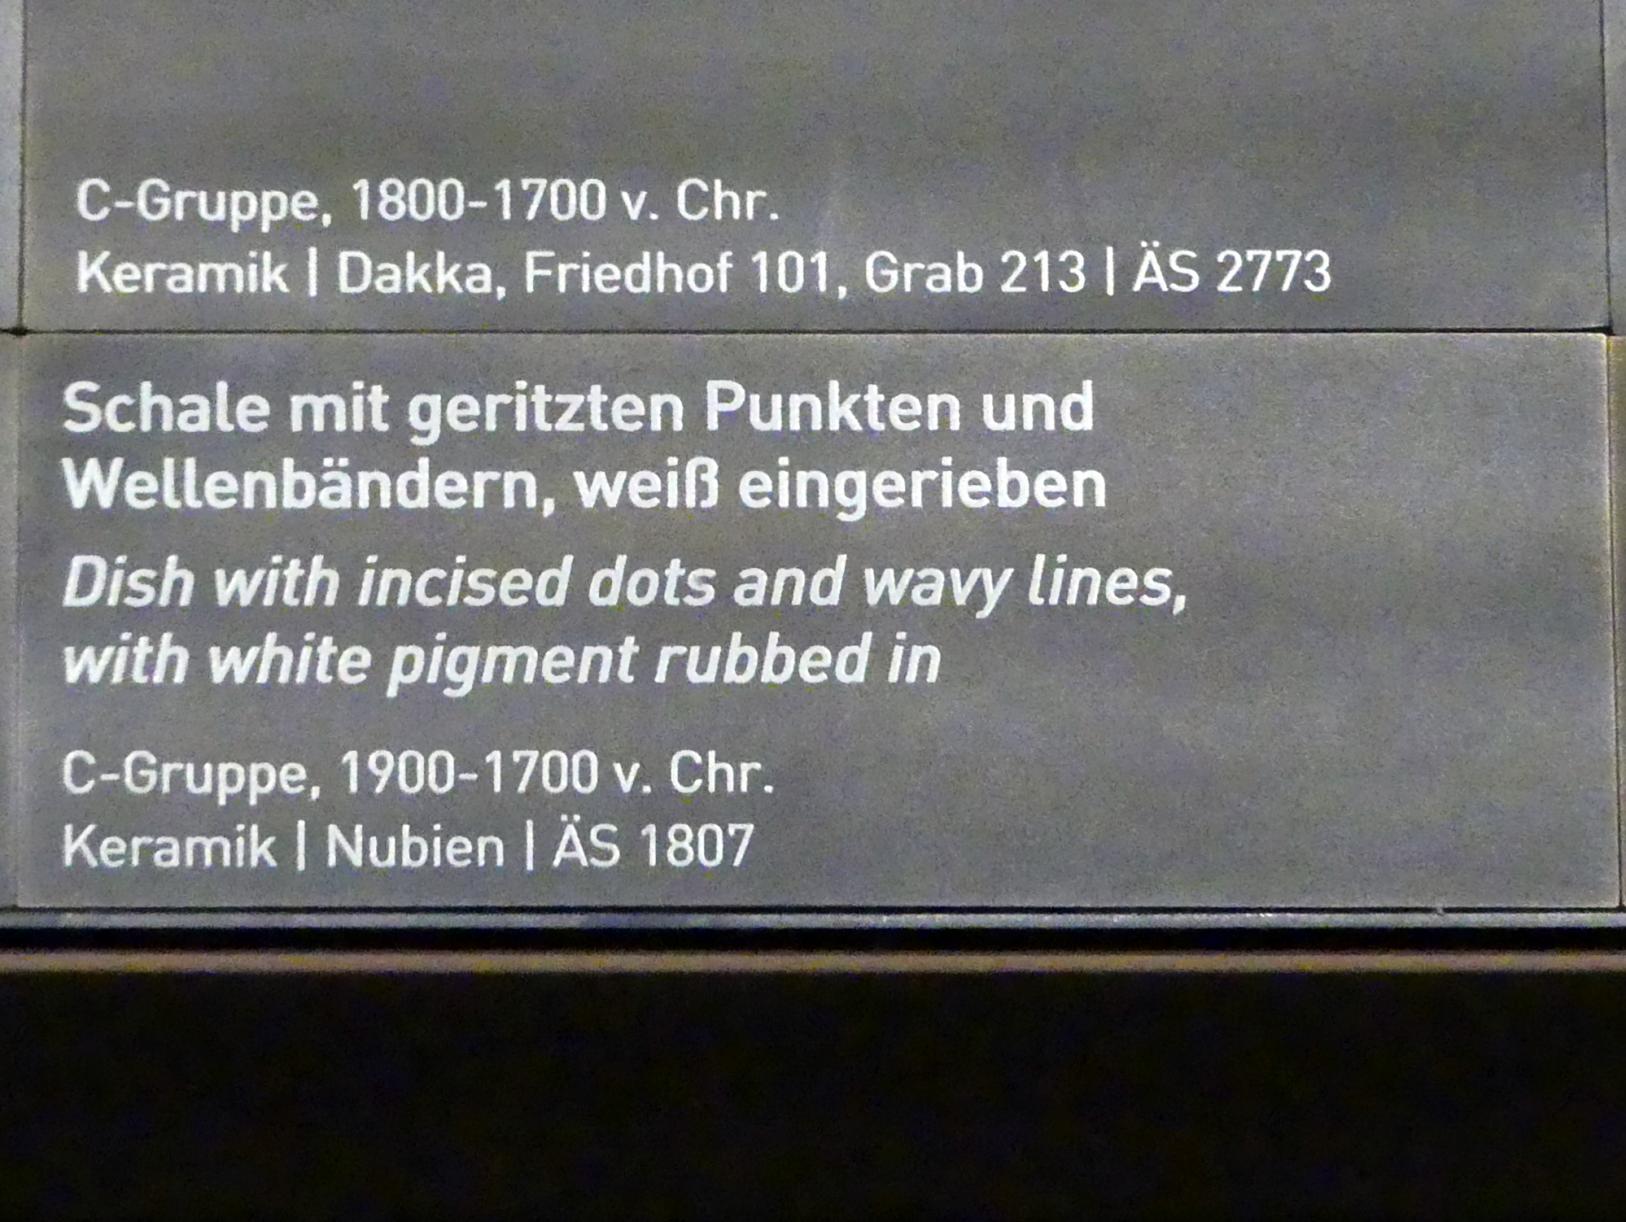 Schale mit geritzten Punkten und Wellenbändern, weiß eingerieben, C-Gruppe, 1900 - 1550 v. Chr., 1900 - 1700 v. Chr., Bild 2/2